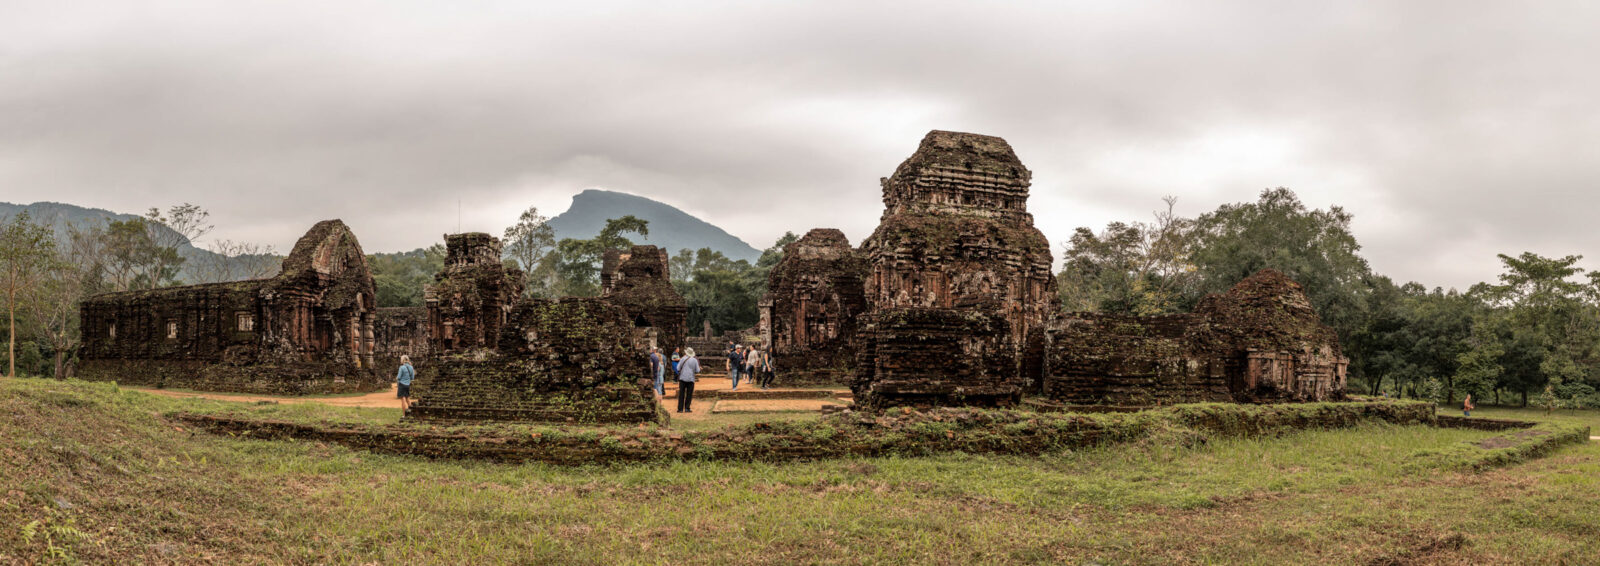 tempel ruinen in vietnam